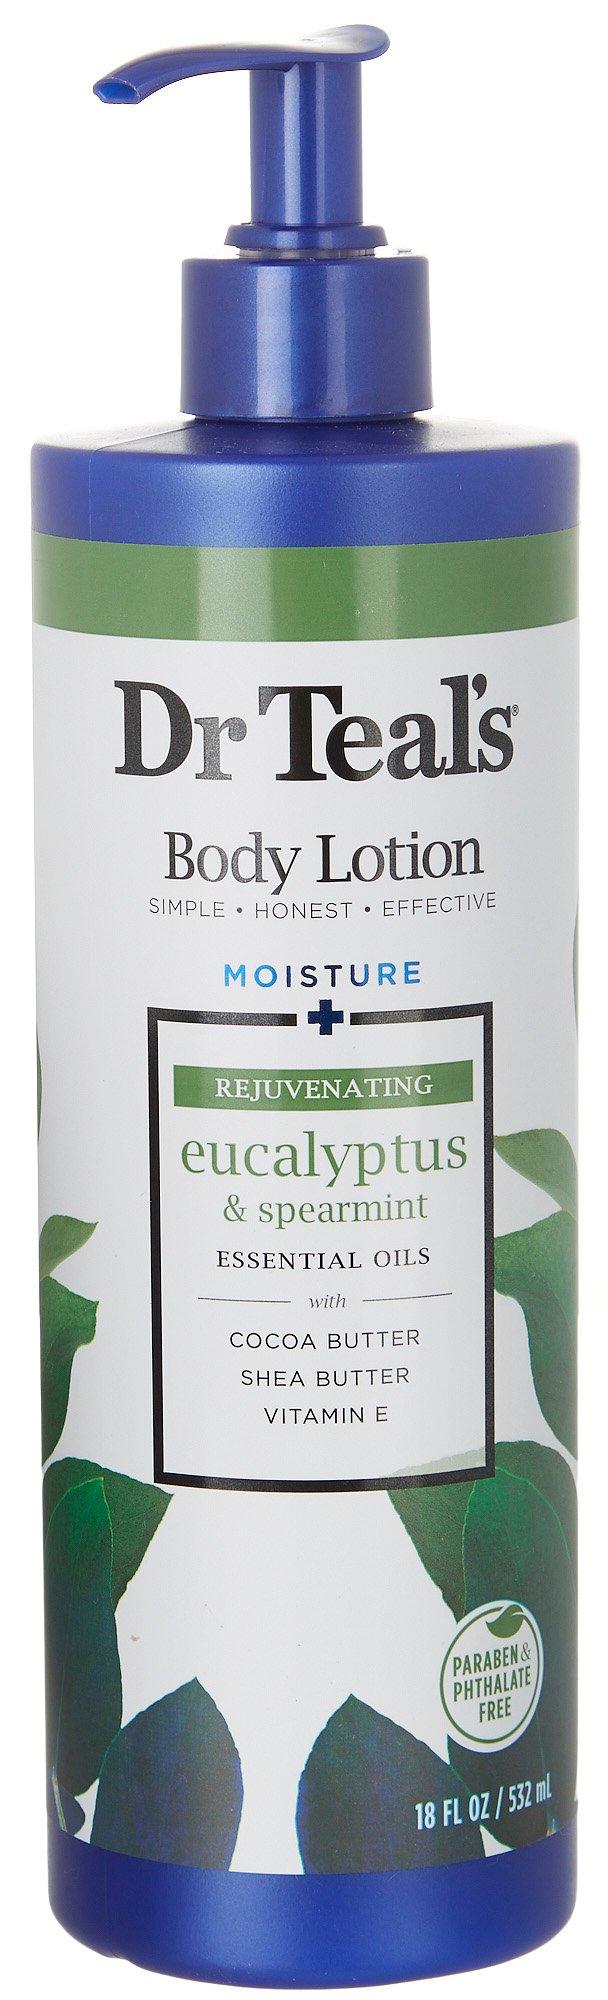 Dr. Teals Eucalyptus & Spearmint Body Lotion 18